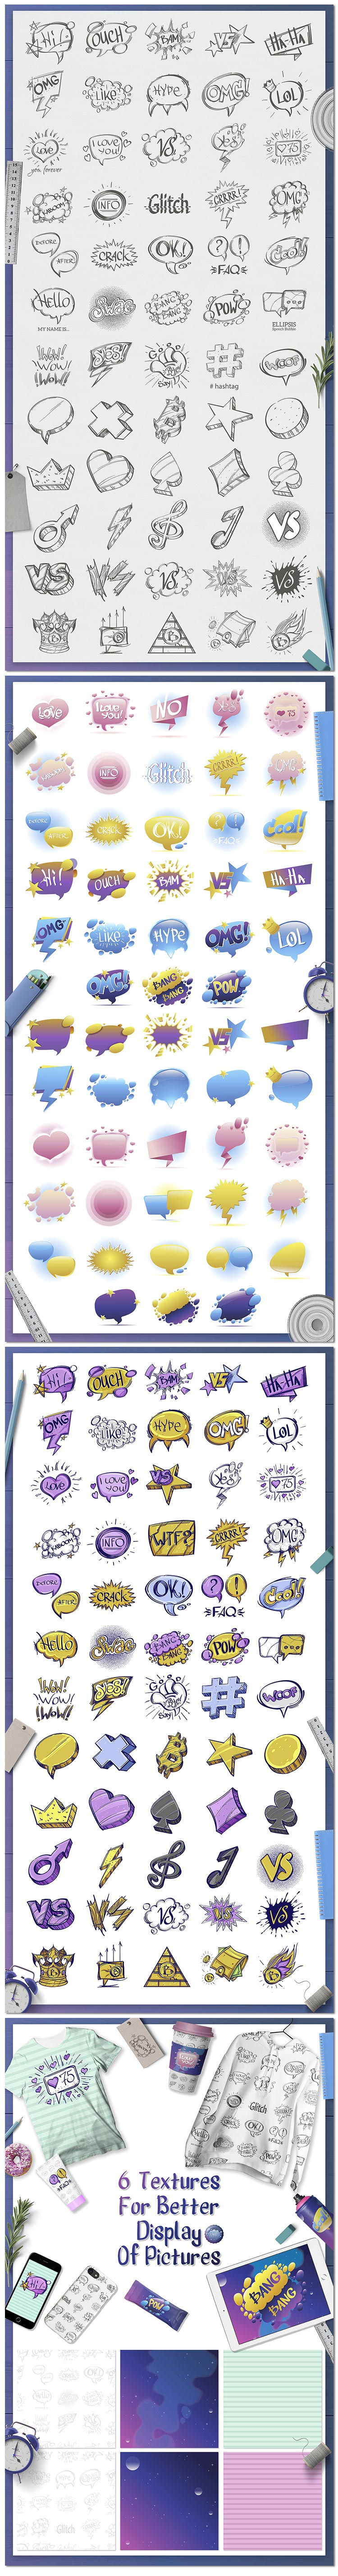 可爱聊天气泡彩色创意卡通网络对话框符号有趣矢量素材模板设计